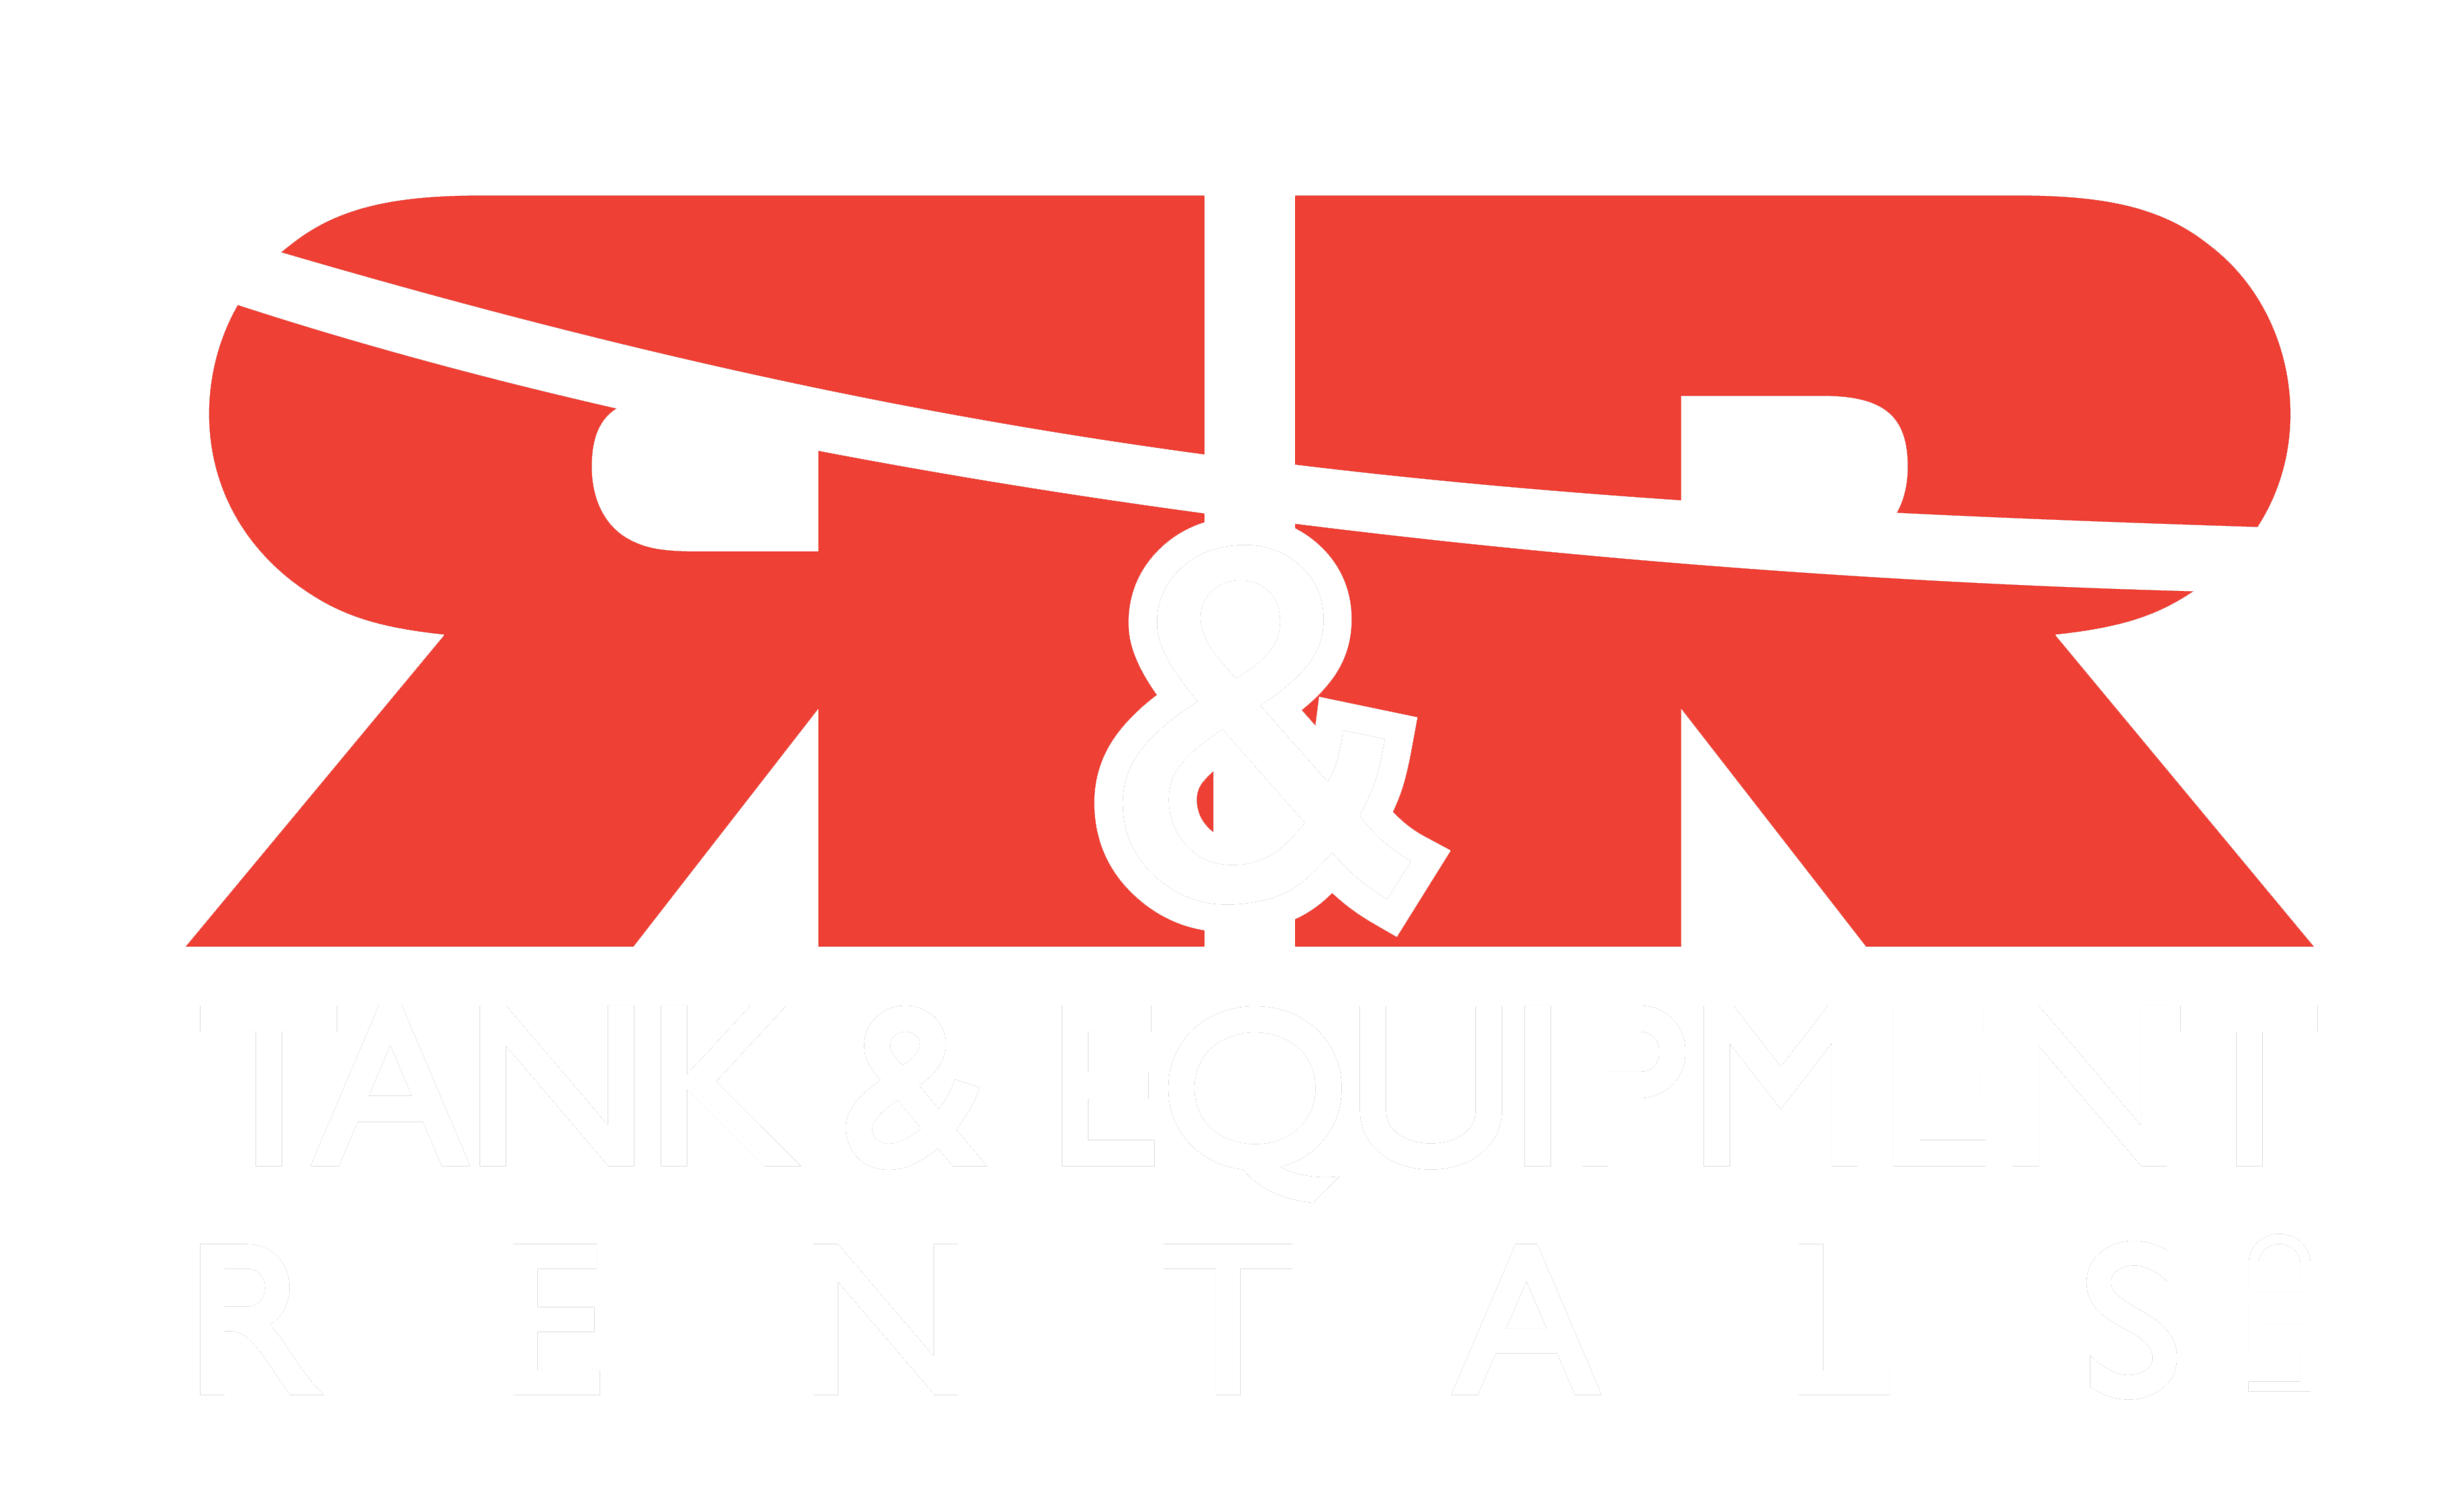 RR Tank & Equipment Rentals LTD.